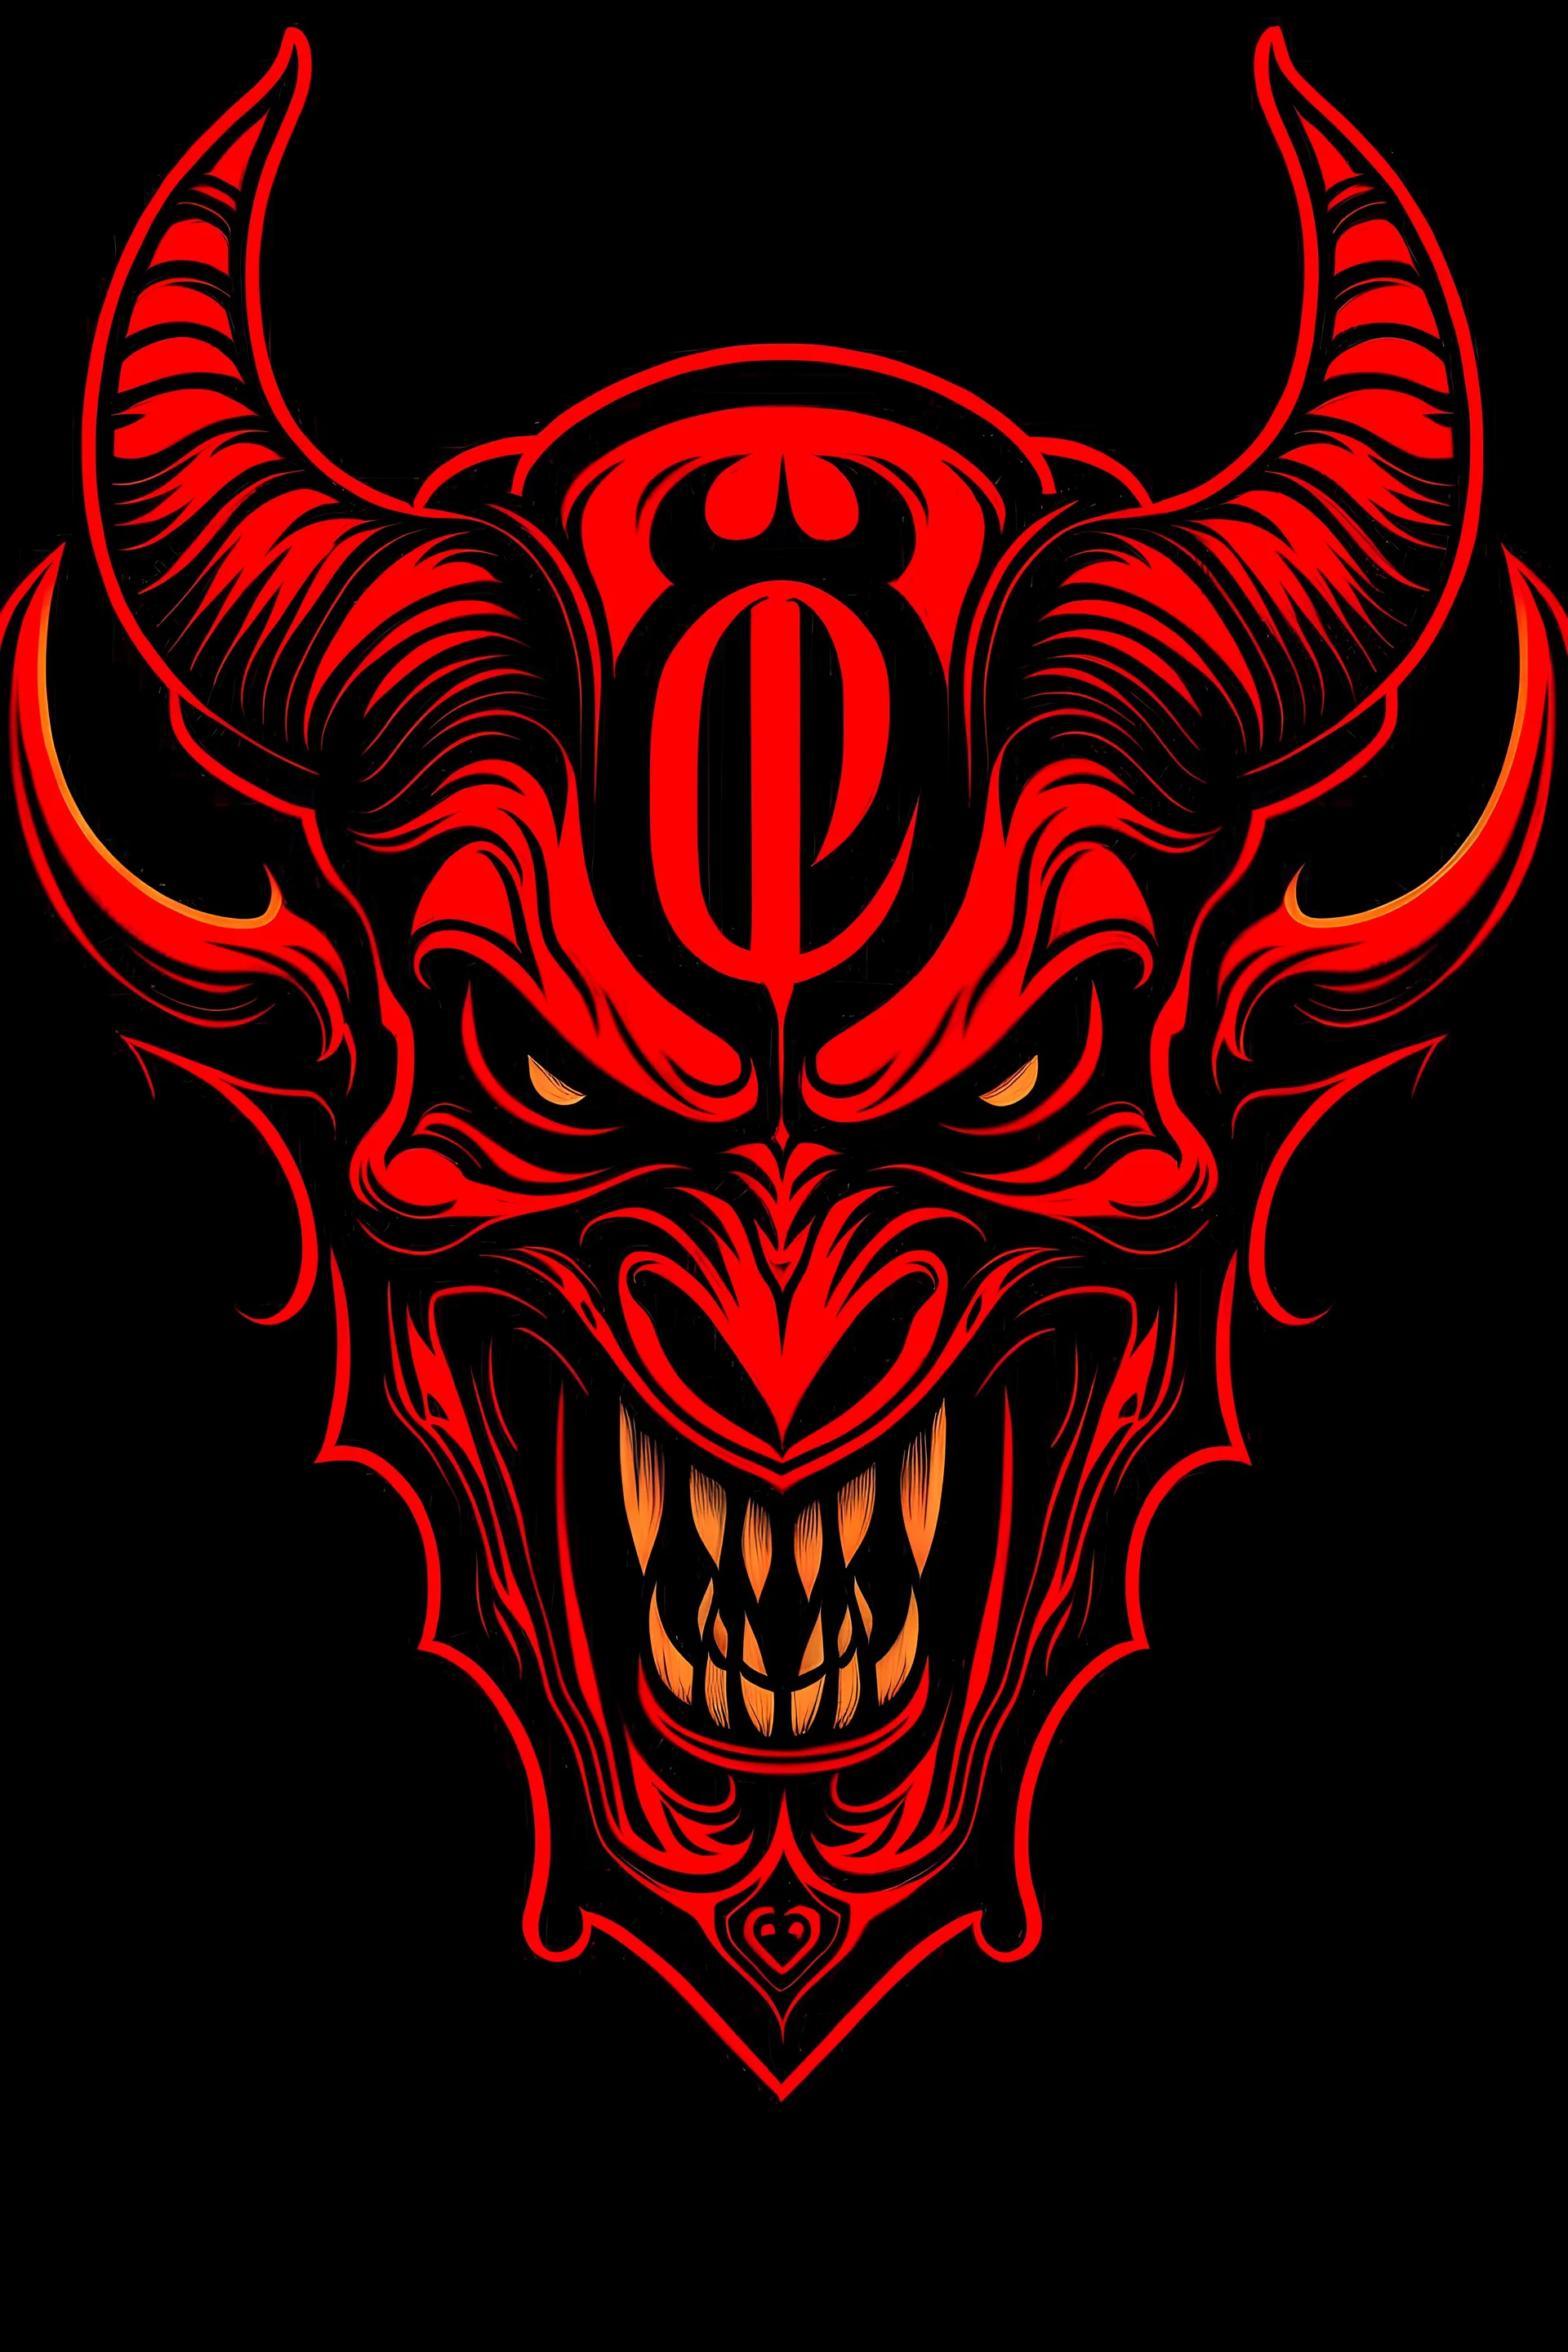 666 devil logo